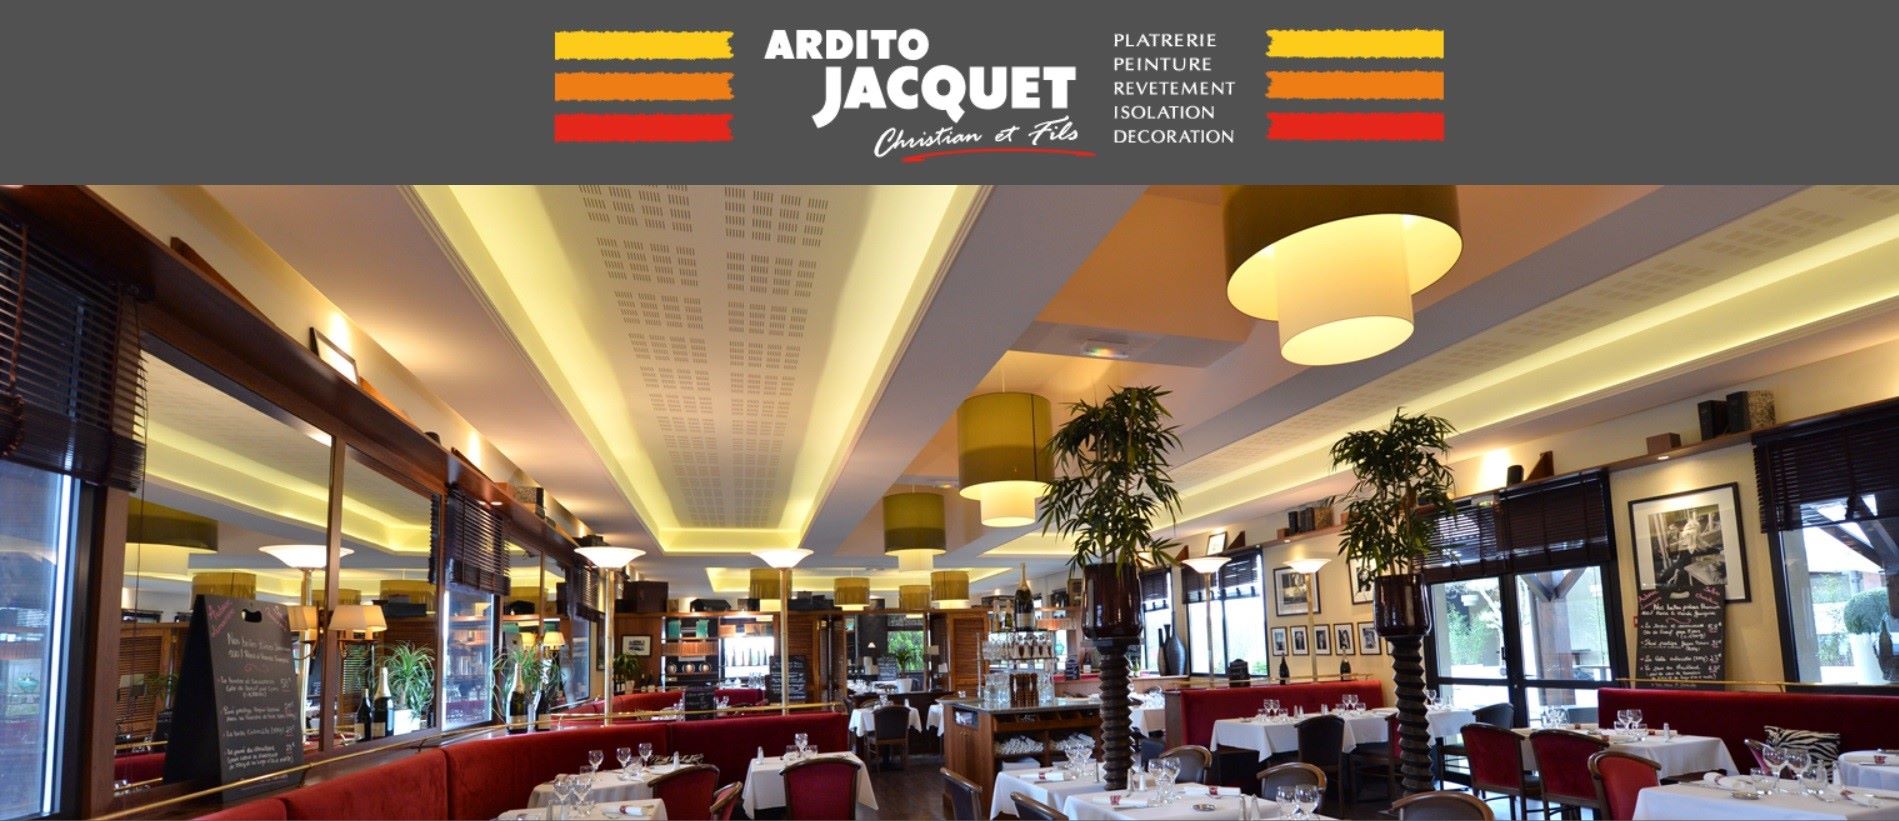  Ardito Jacquet - Entreprise d’Isolation de Bourg-en-Bresse